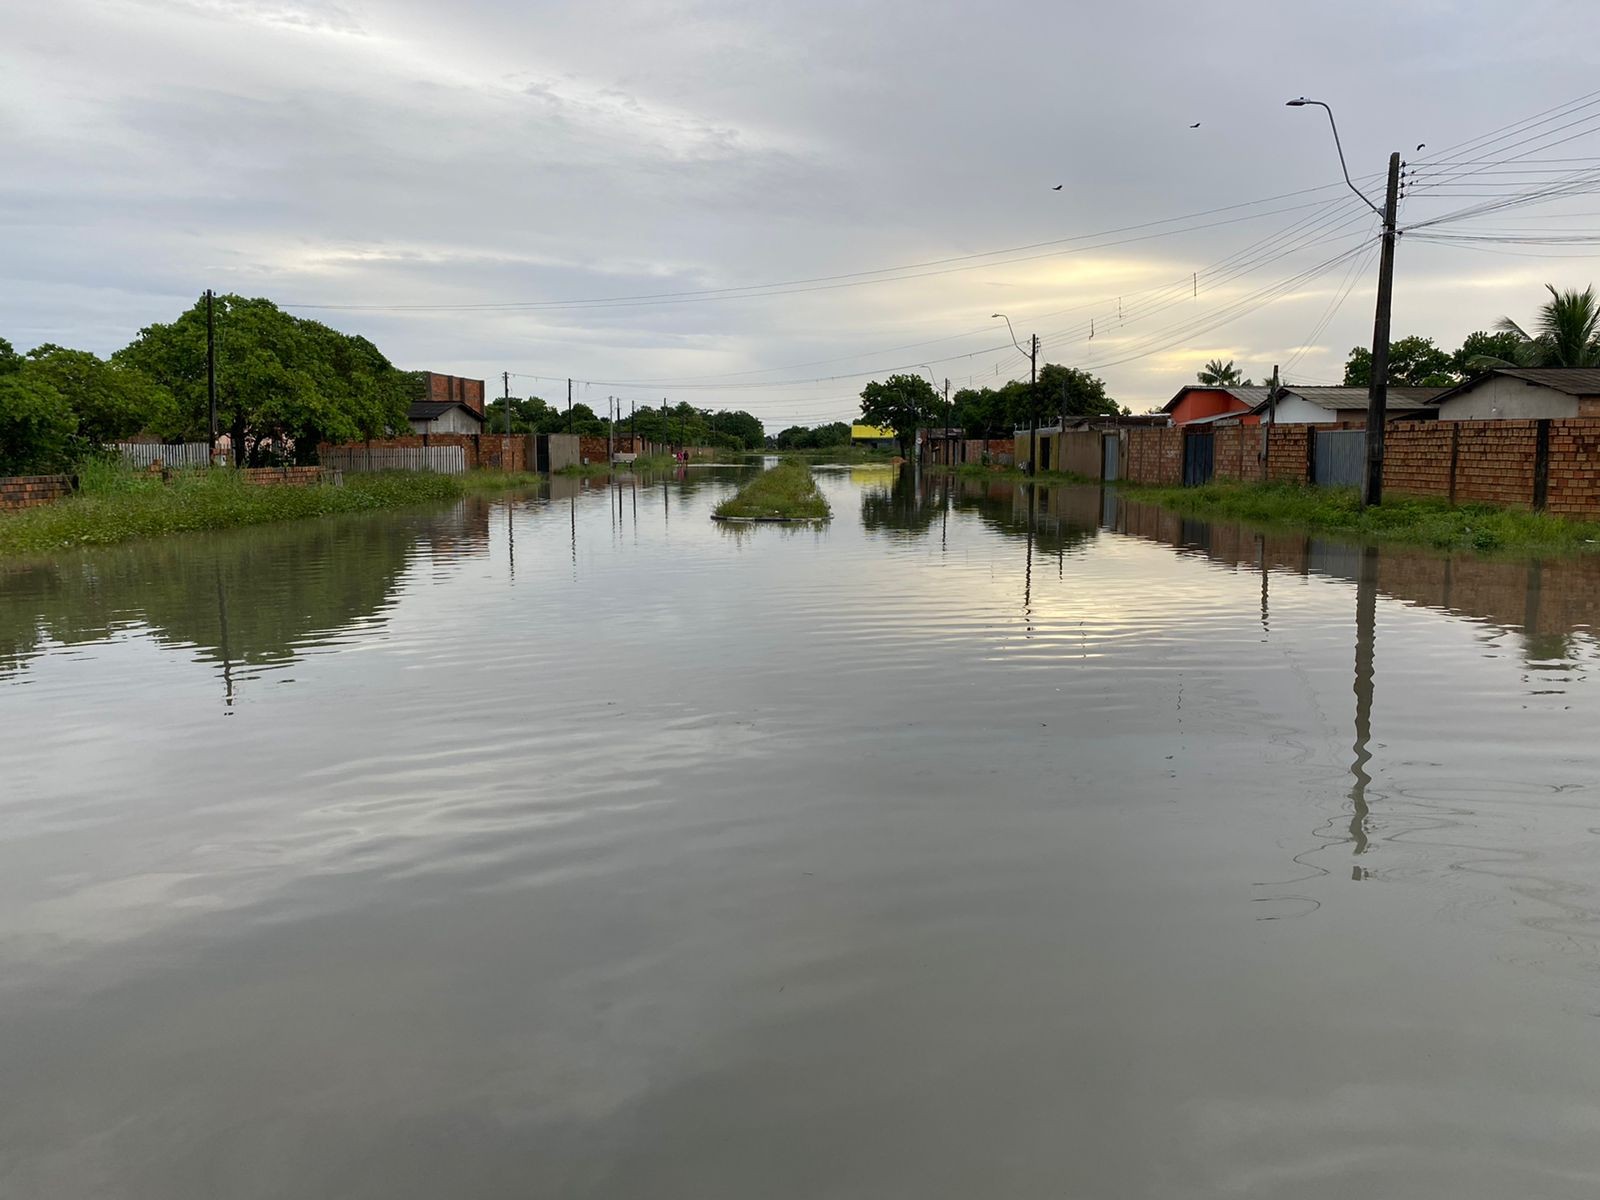 Moradores ficam com água até a cintura em bairros inundados por chuvas em Boa Vista: 'ilhados'